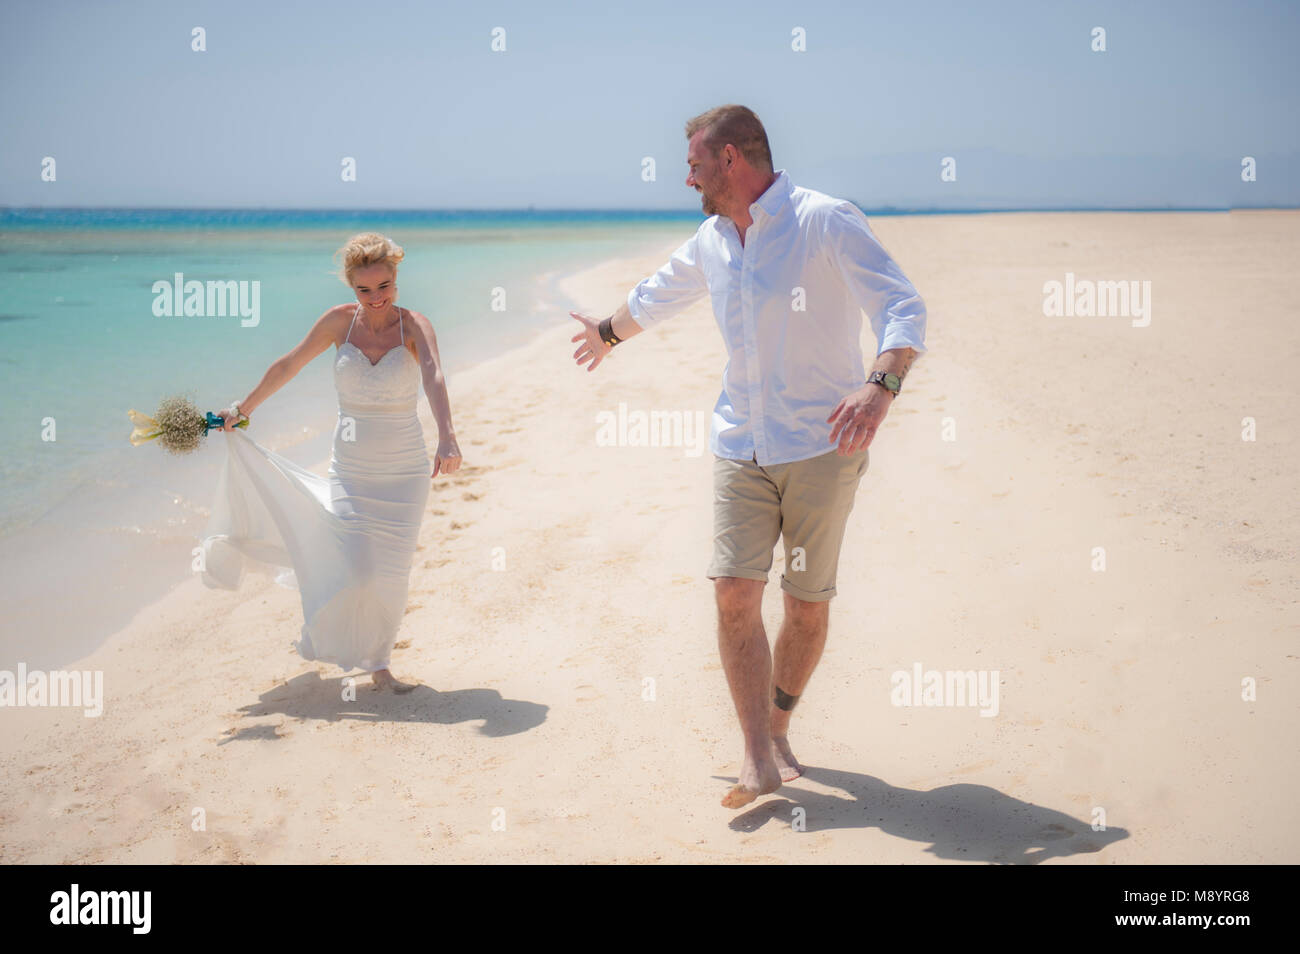 Hermosa pareja caminando juntos en un paraíso tropical en la playa en el día de la boda en bata vestido blanco con vista al mar Foto de stock